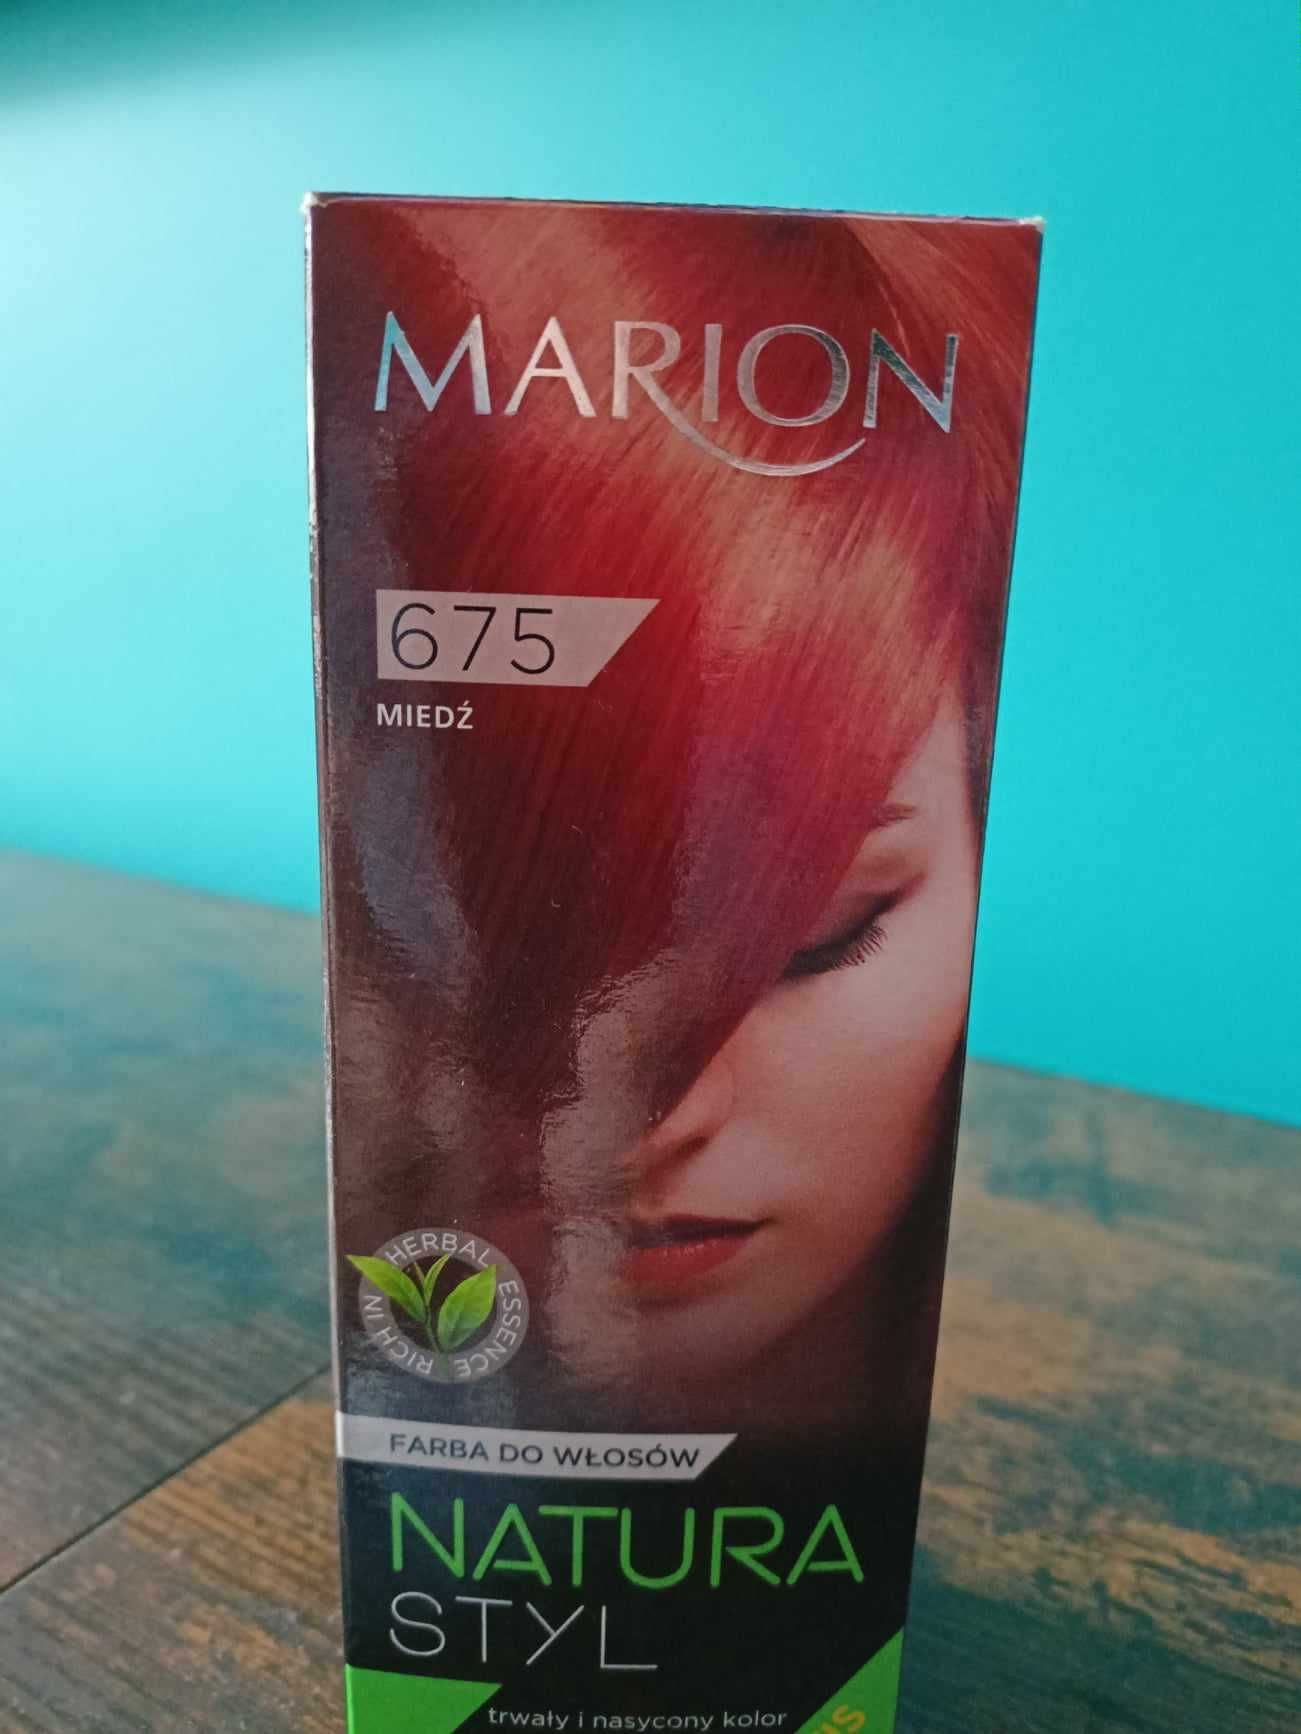 Nowa farba do włosów Marion Natura Styl 675 Miedź 80ml